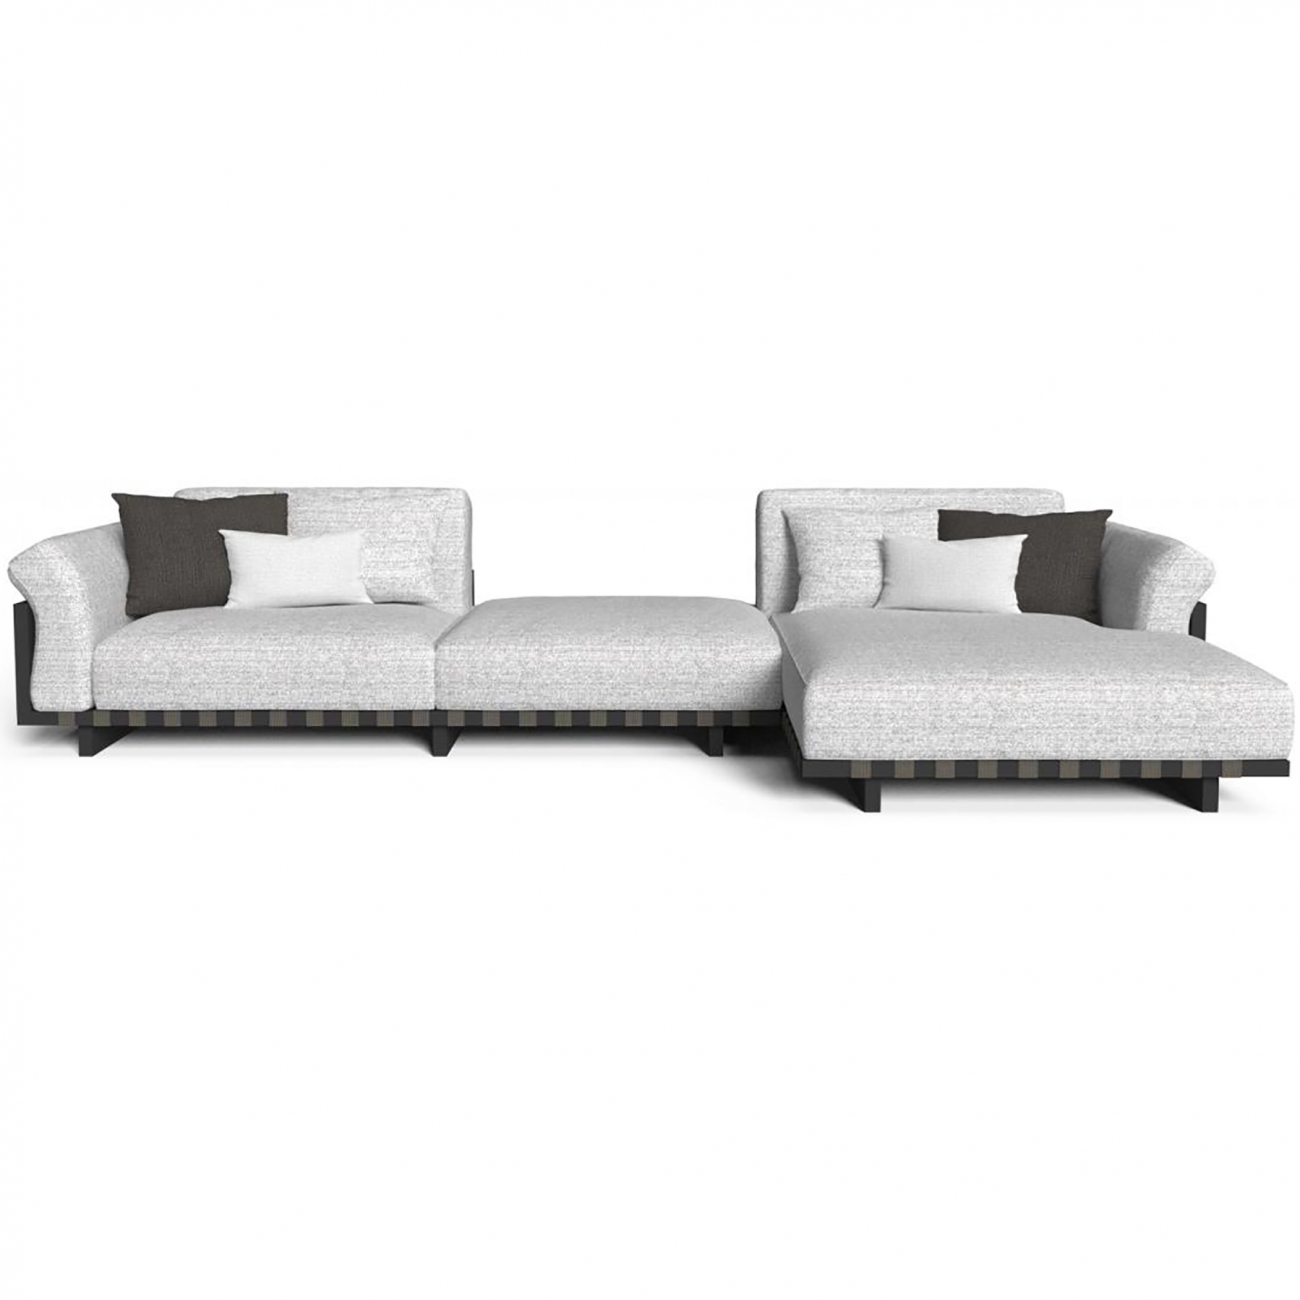 Talenti Argo Alu modular sofa